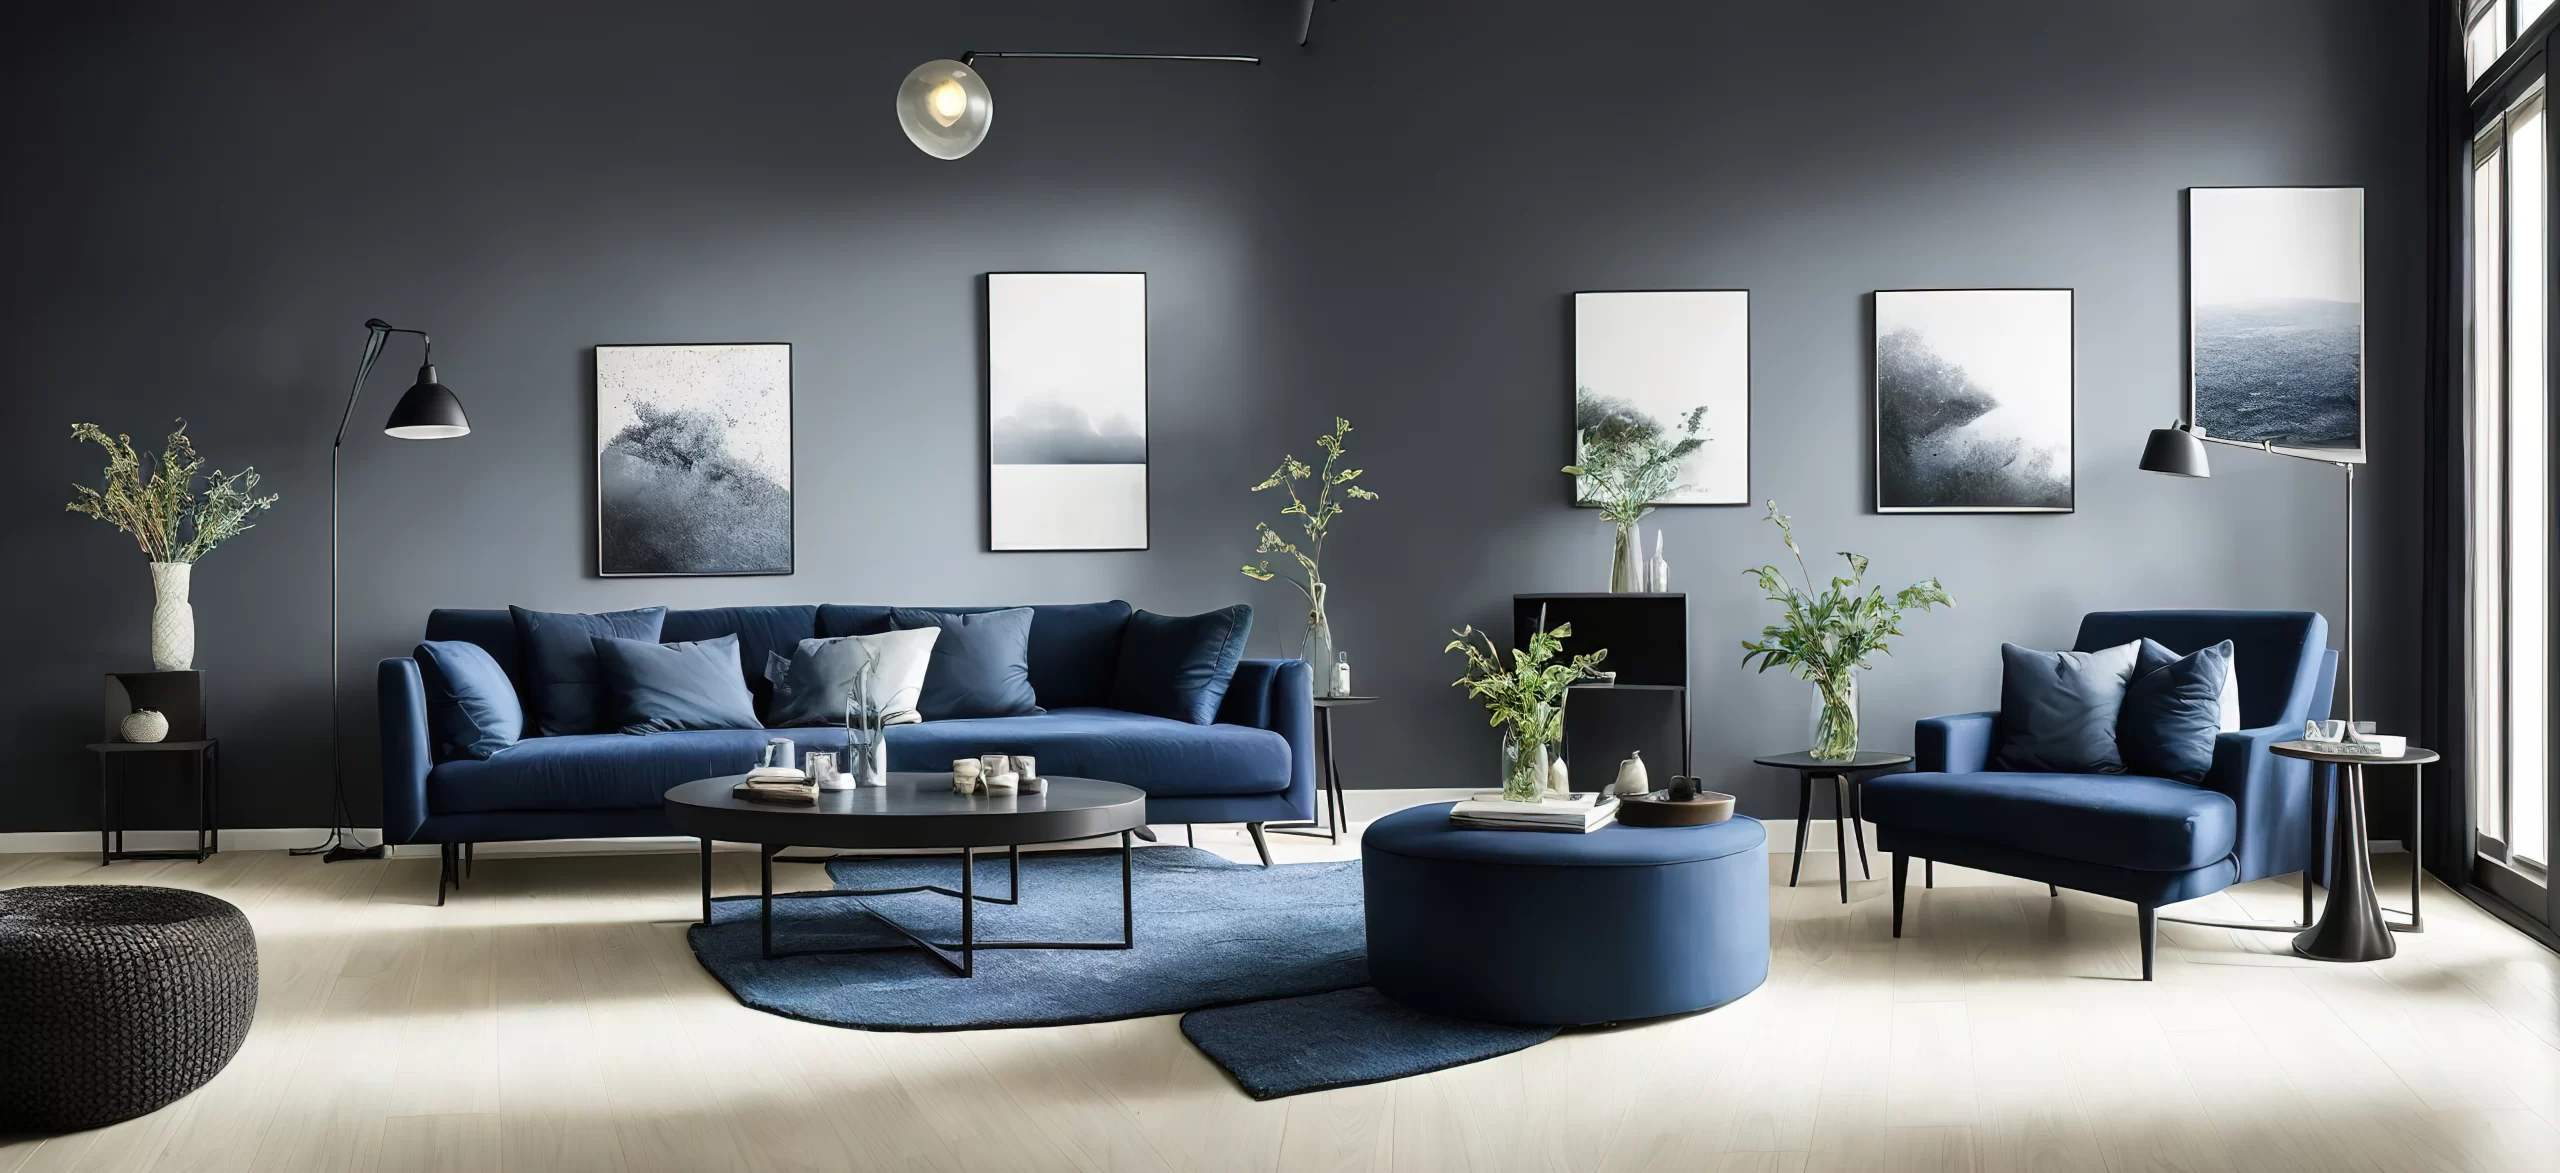 blue gray white color interior decor ideas 3